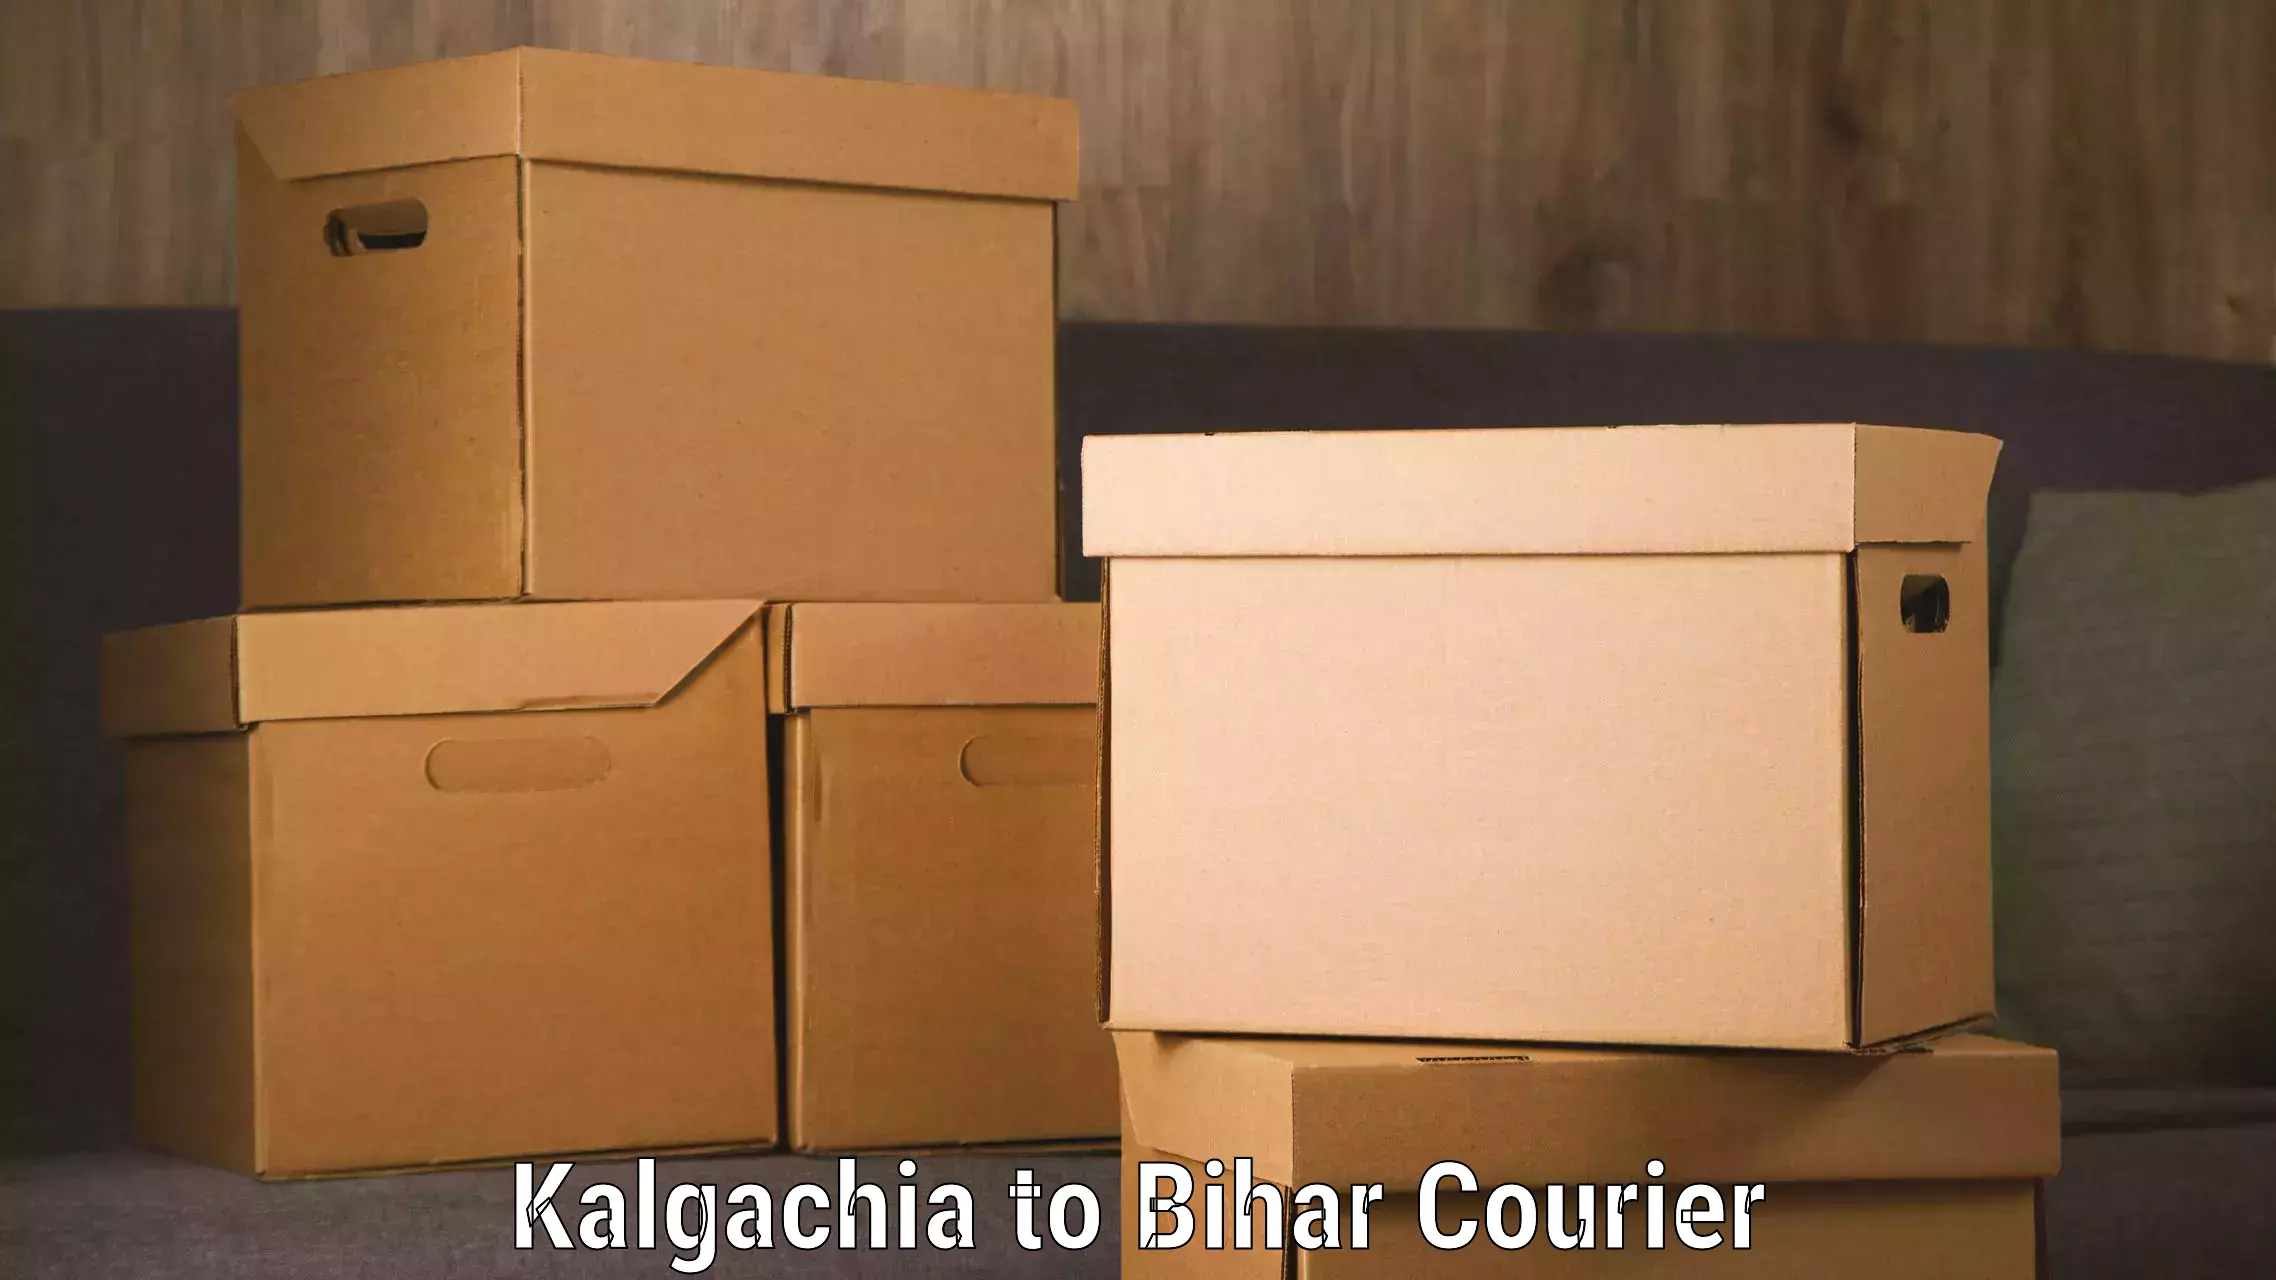 Luggage transport deals Kalgachia to Dhaka